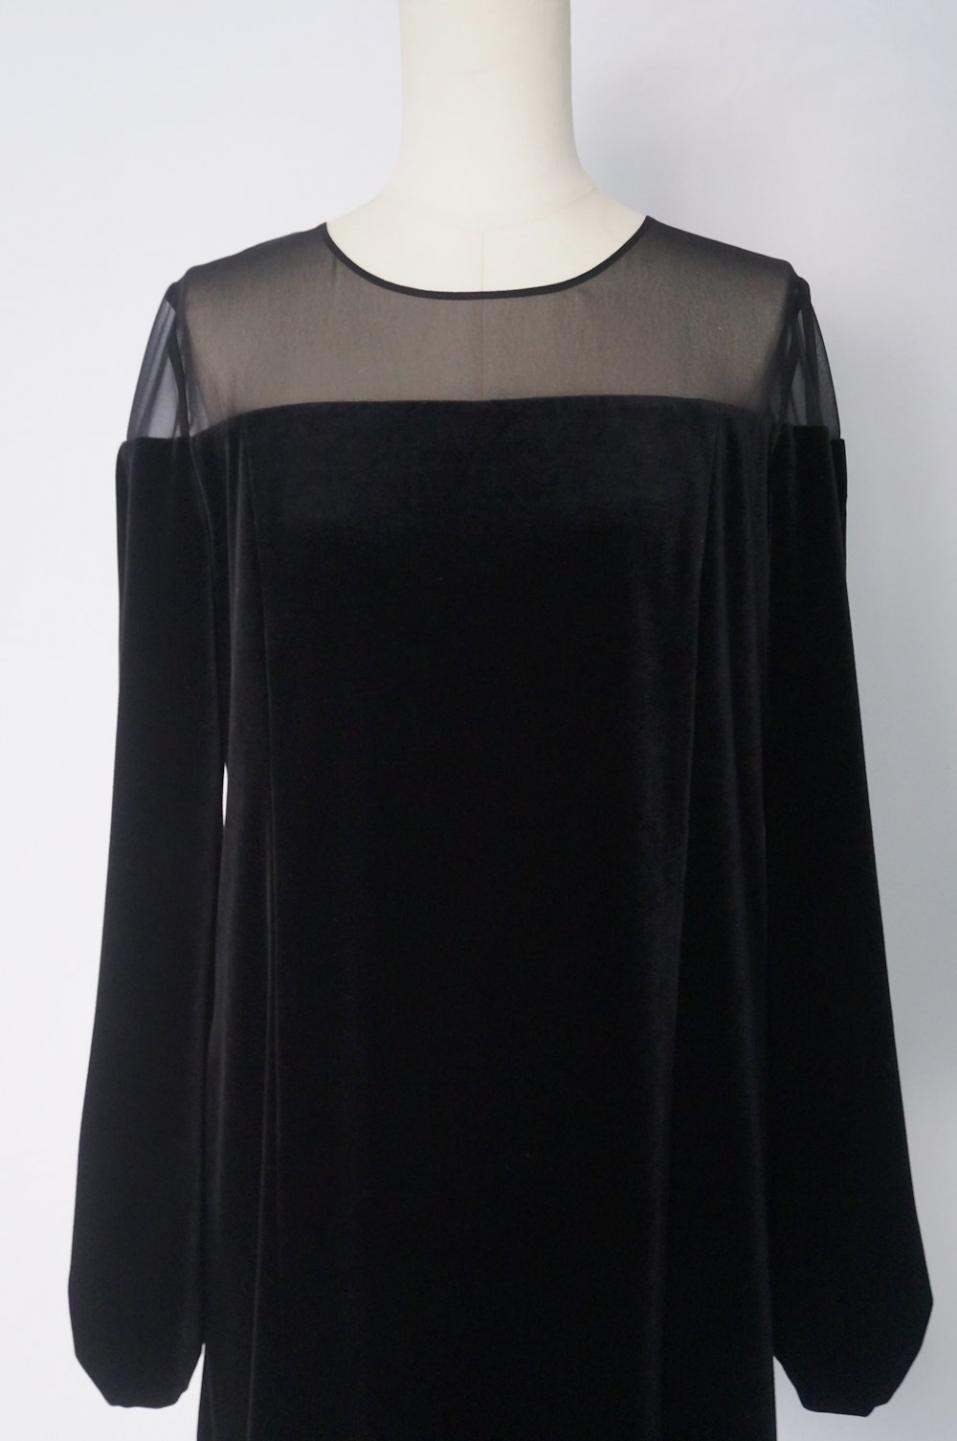 フォクシー シフォントップのベロア長袖ドレス 40 / レンタルリトルブラックドレス テン Rental Little Black Dress